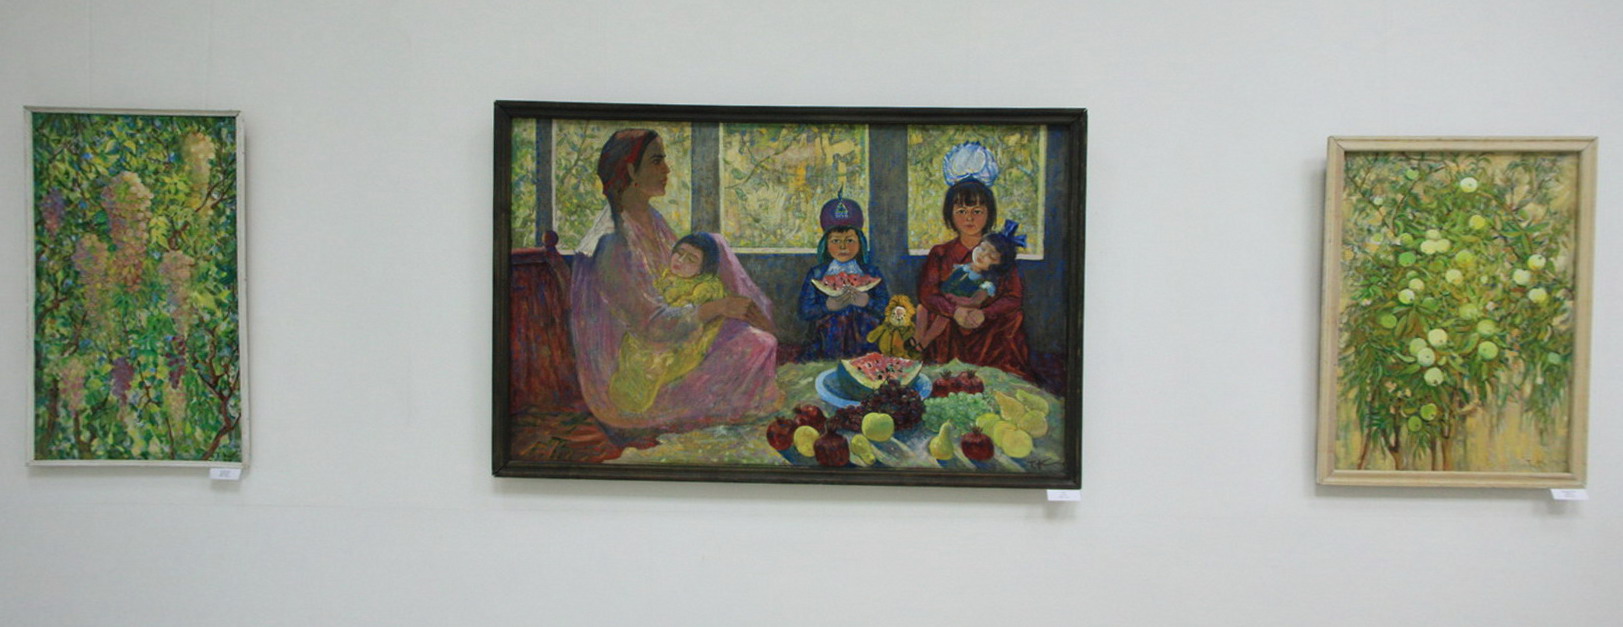 Тура Курязов. Экспозиция картин.